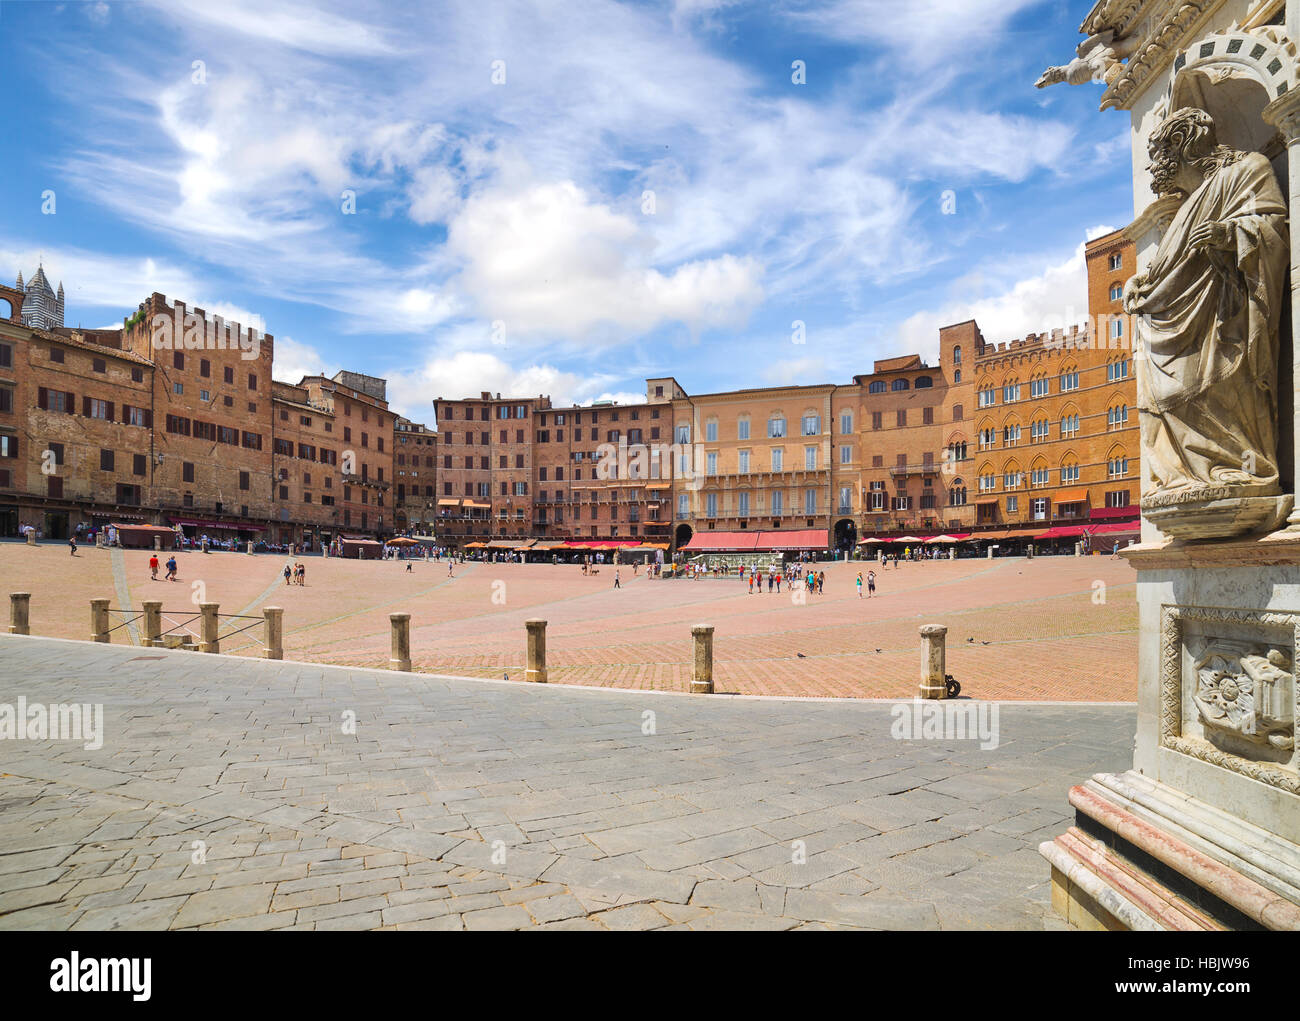 La piazza centrale di Siena, Italia Foto Stock